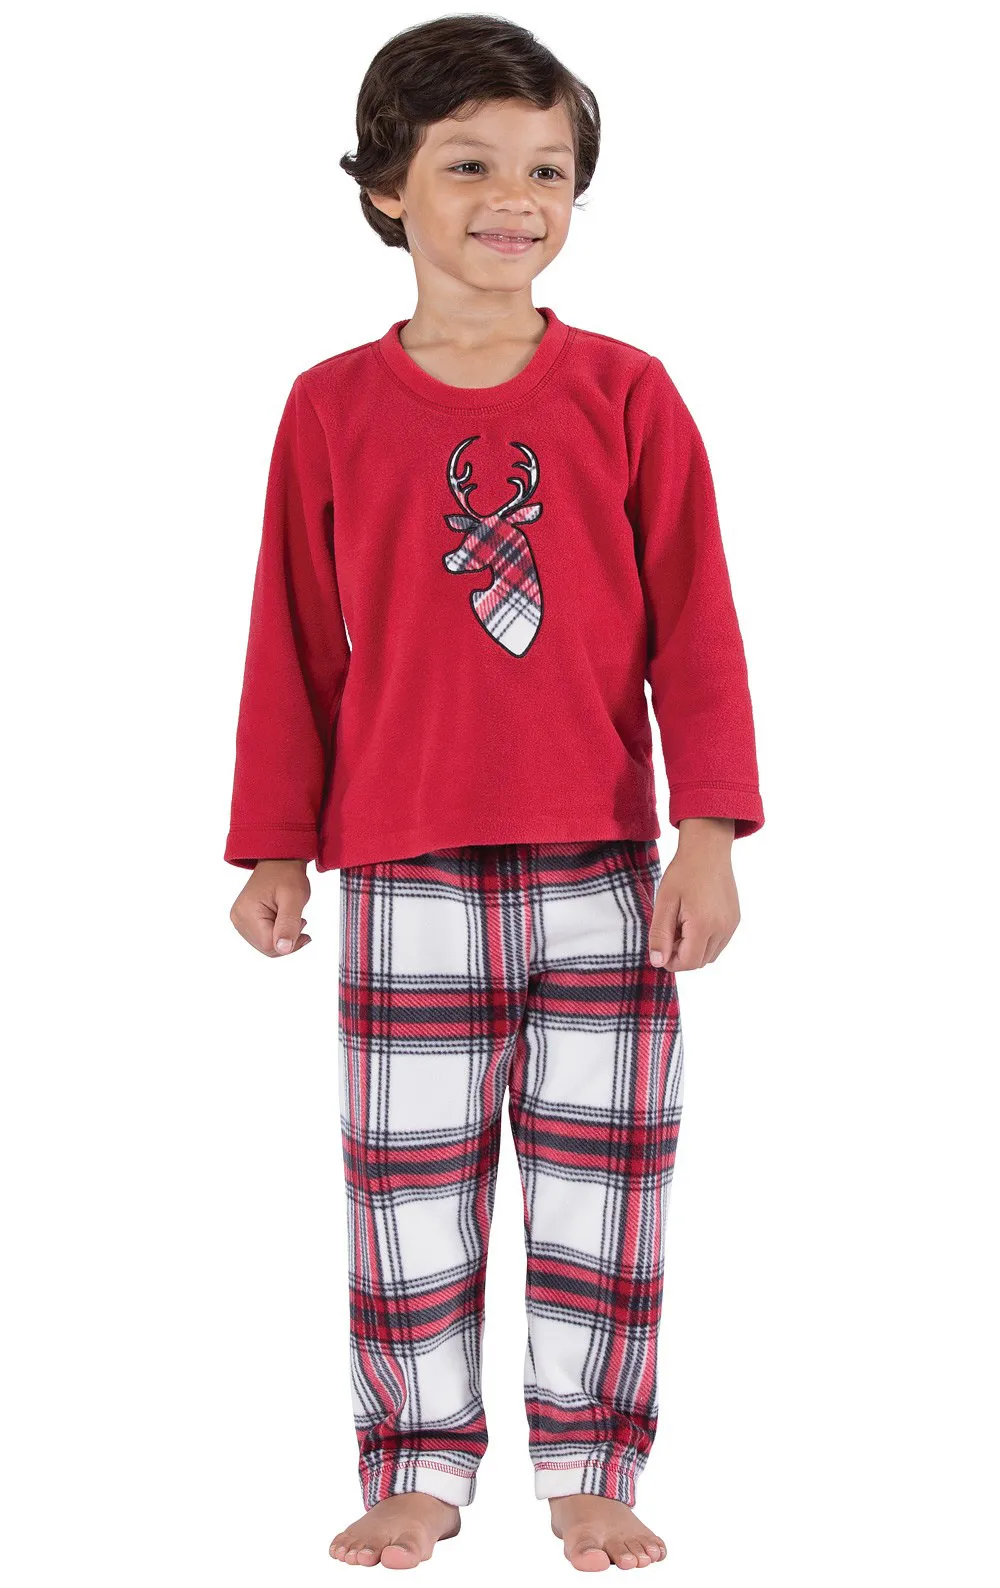 Julmatchande familjpyjamas Set Xmas Sleepwear Parentchild Nightwear Santa Claus Print Tops Plaids Pants7527385